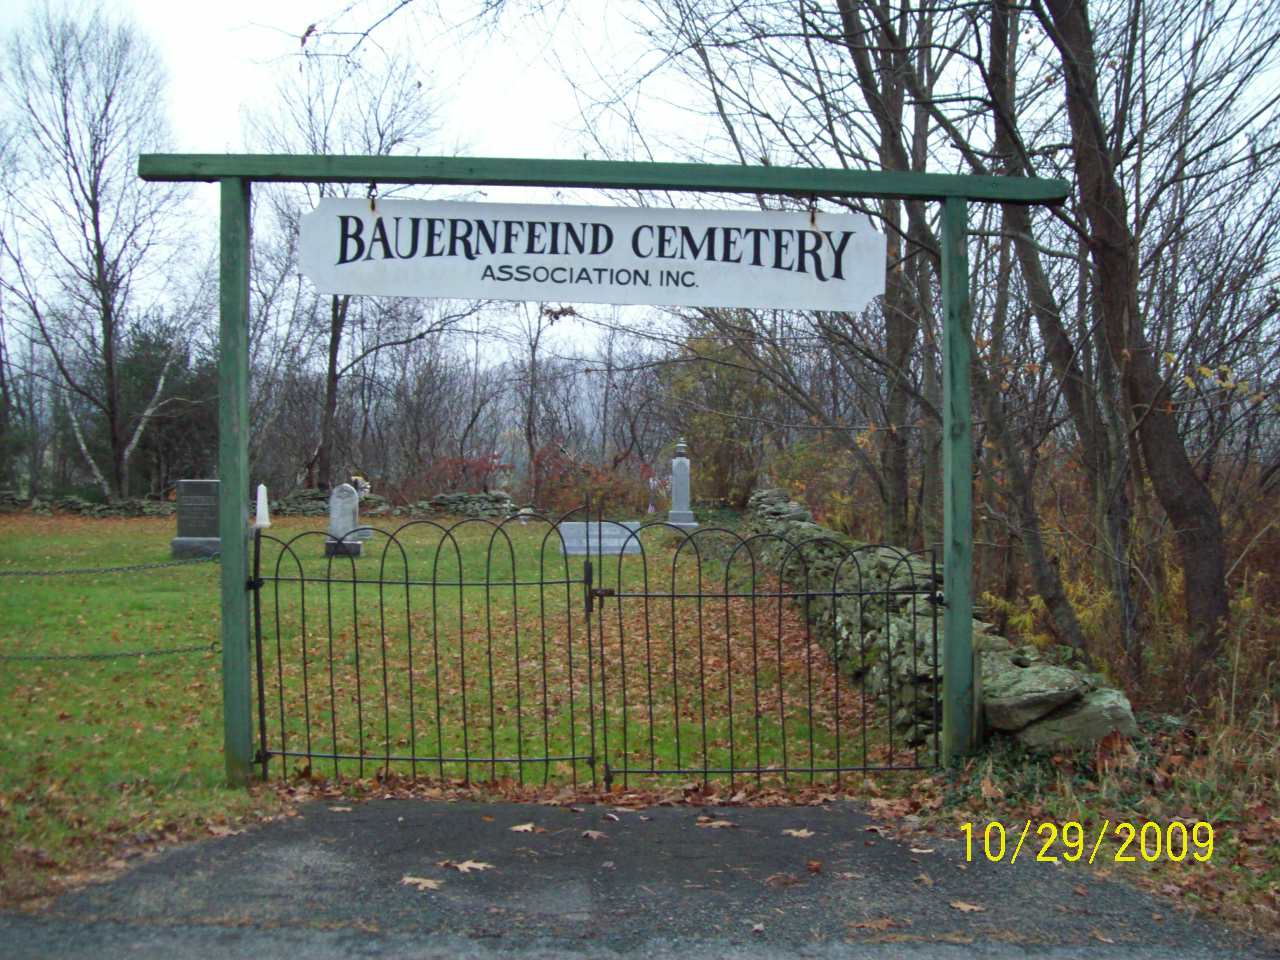 Bauernfeind Cemetery